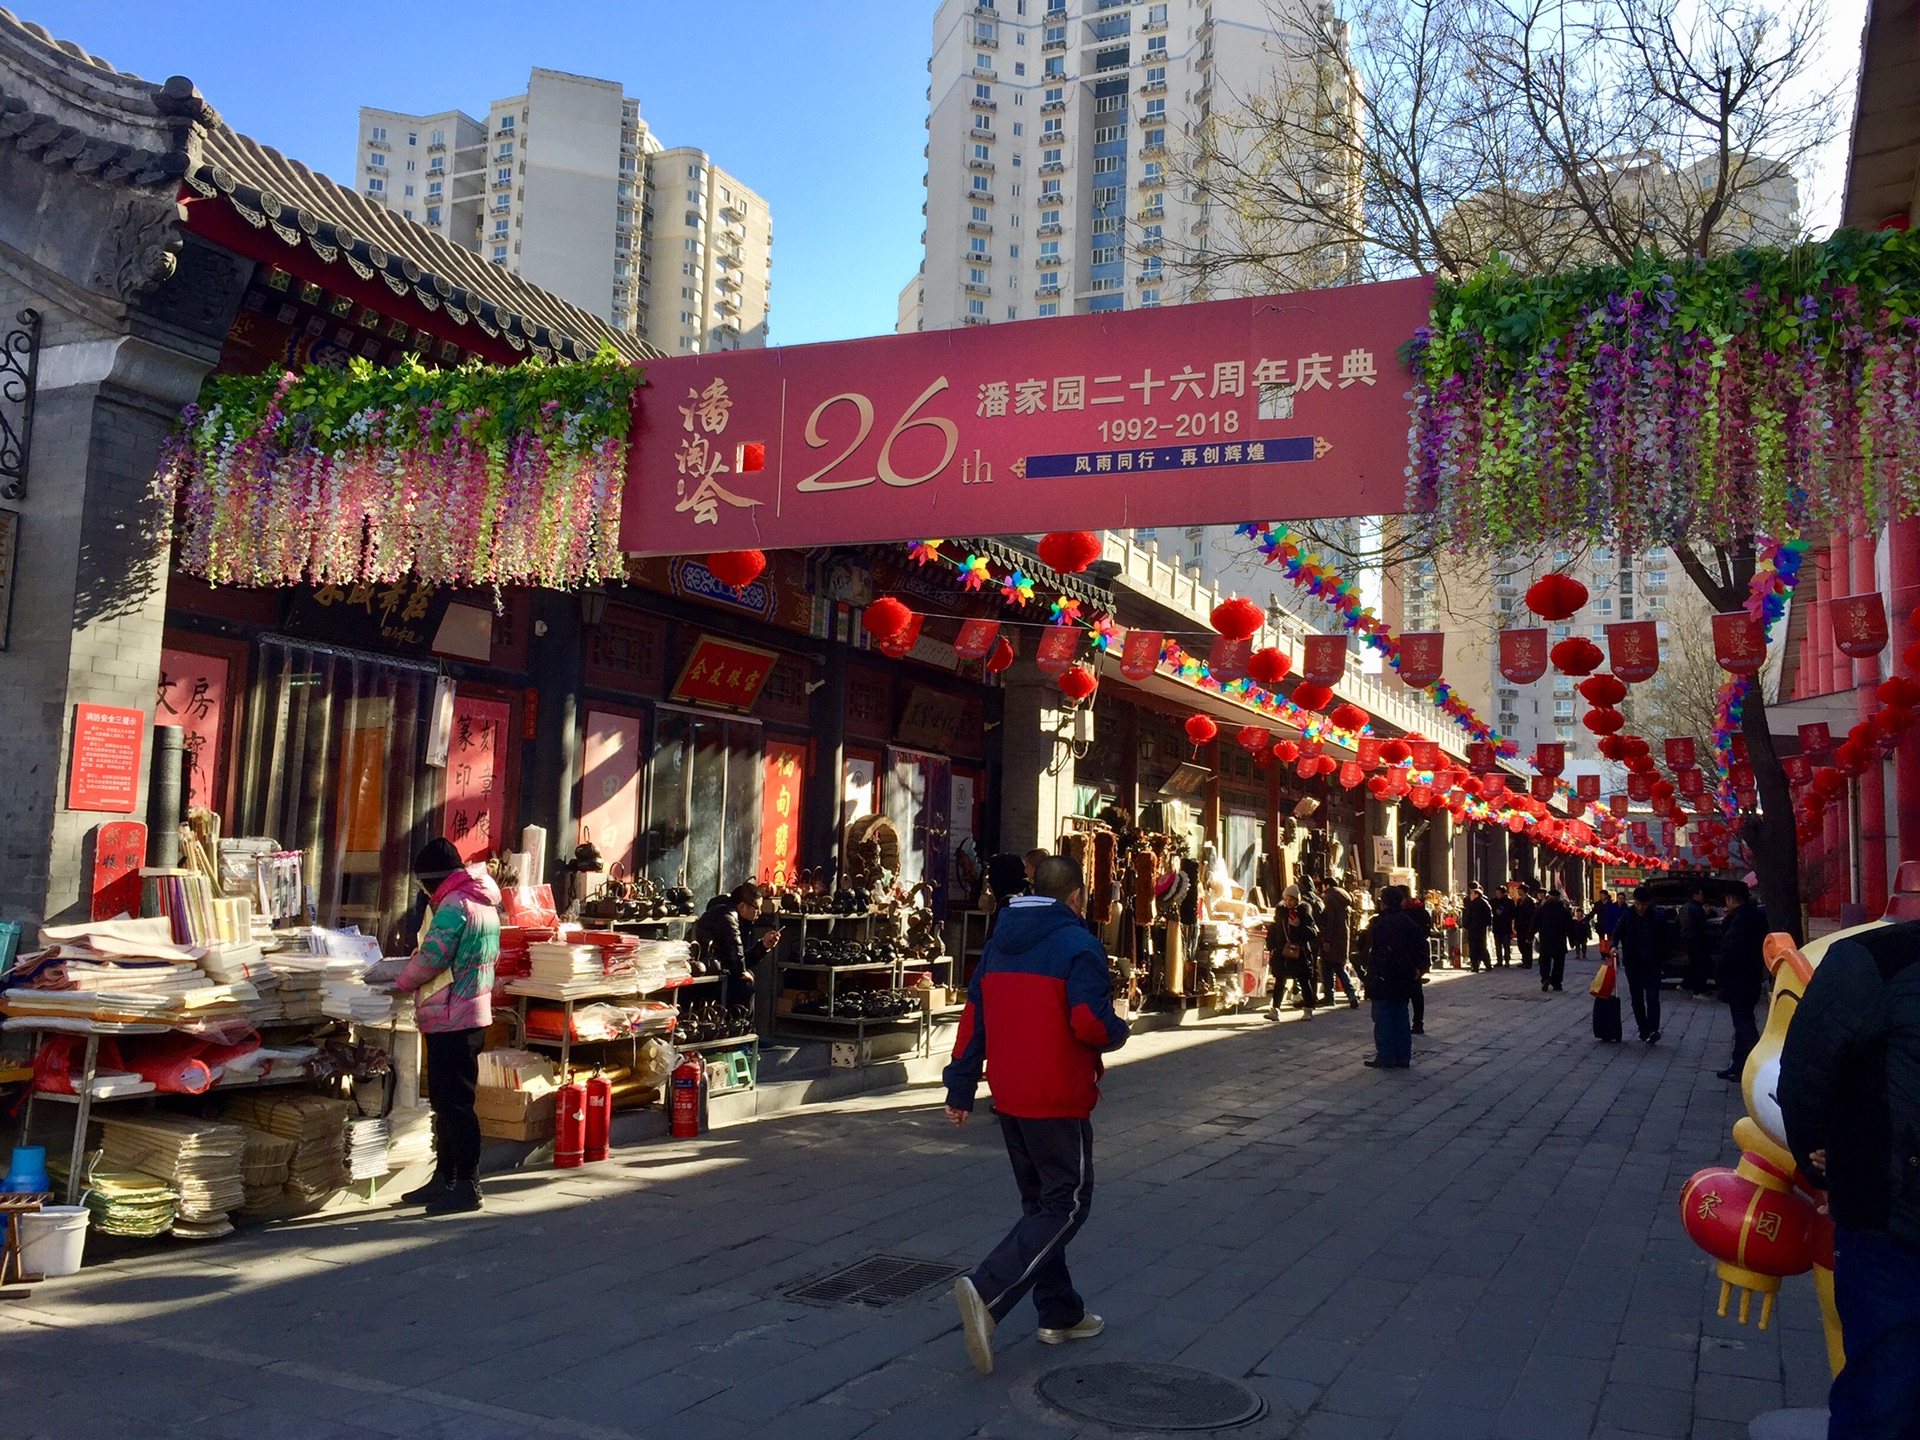 走马观花^_^潘家园旧货市场,北京自助游攻略 - 马蜂窝